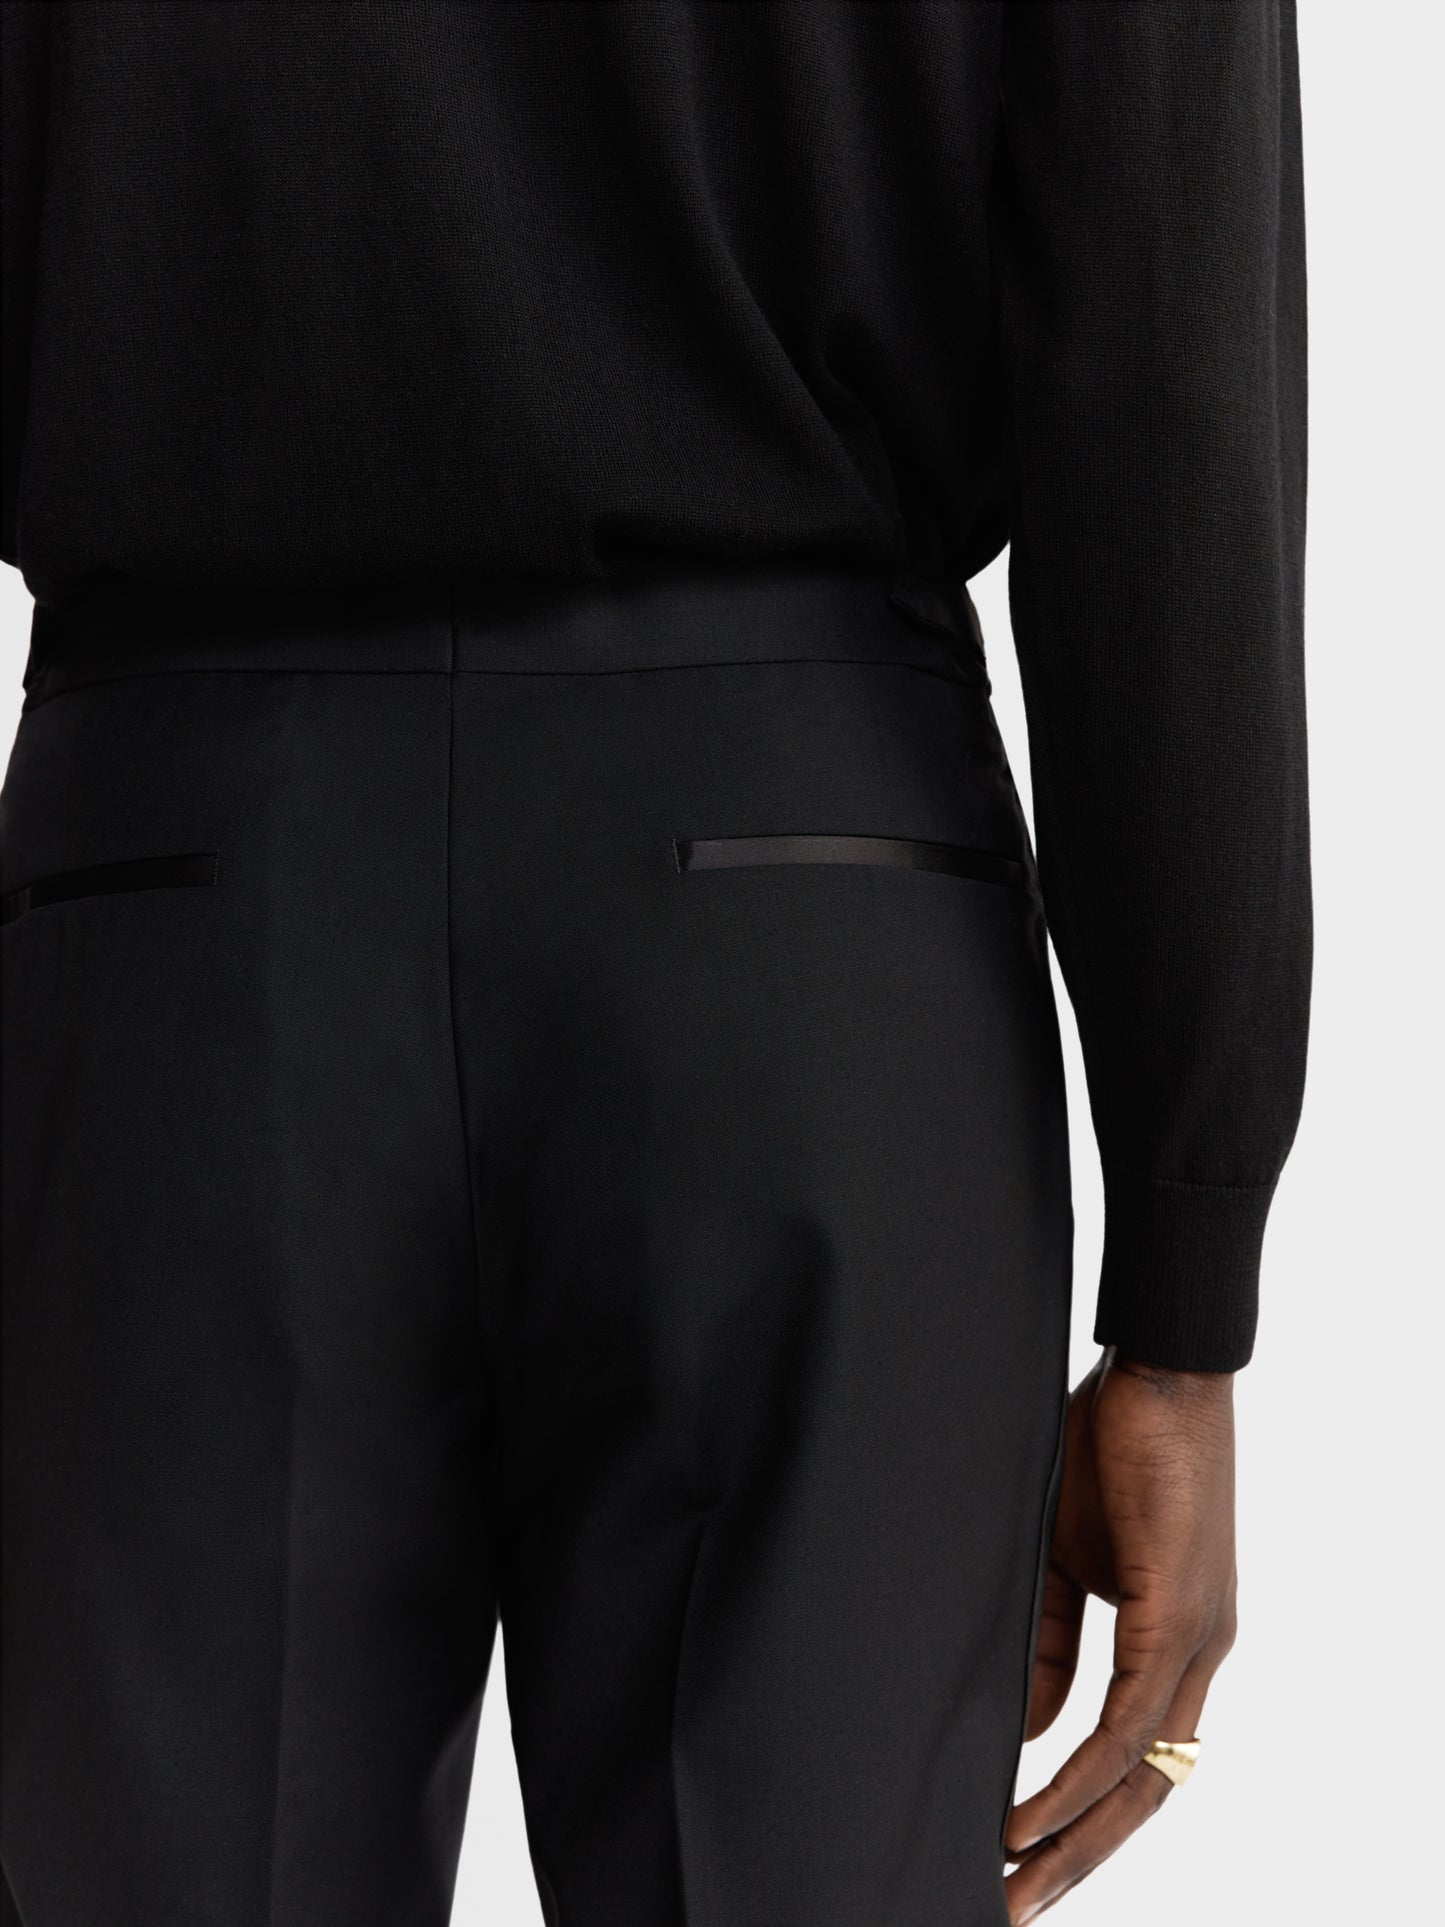 Chancery Premium Wool Regular Black Dinner Trouser